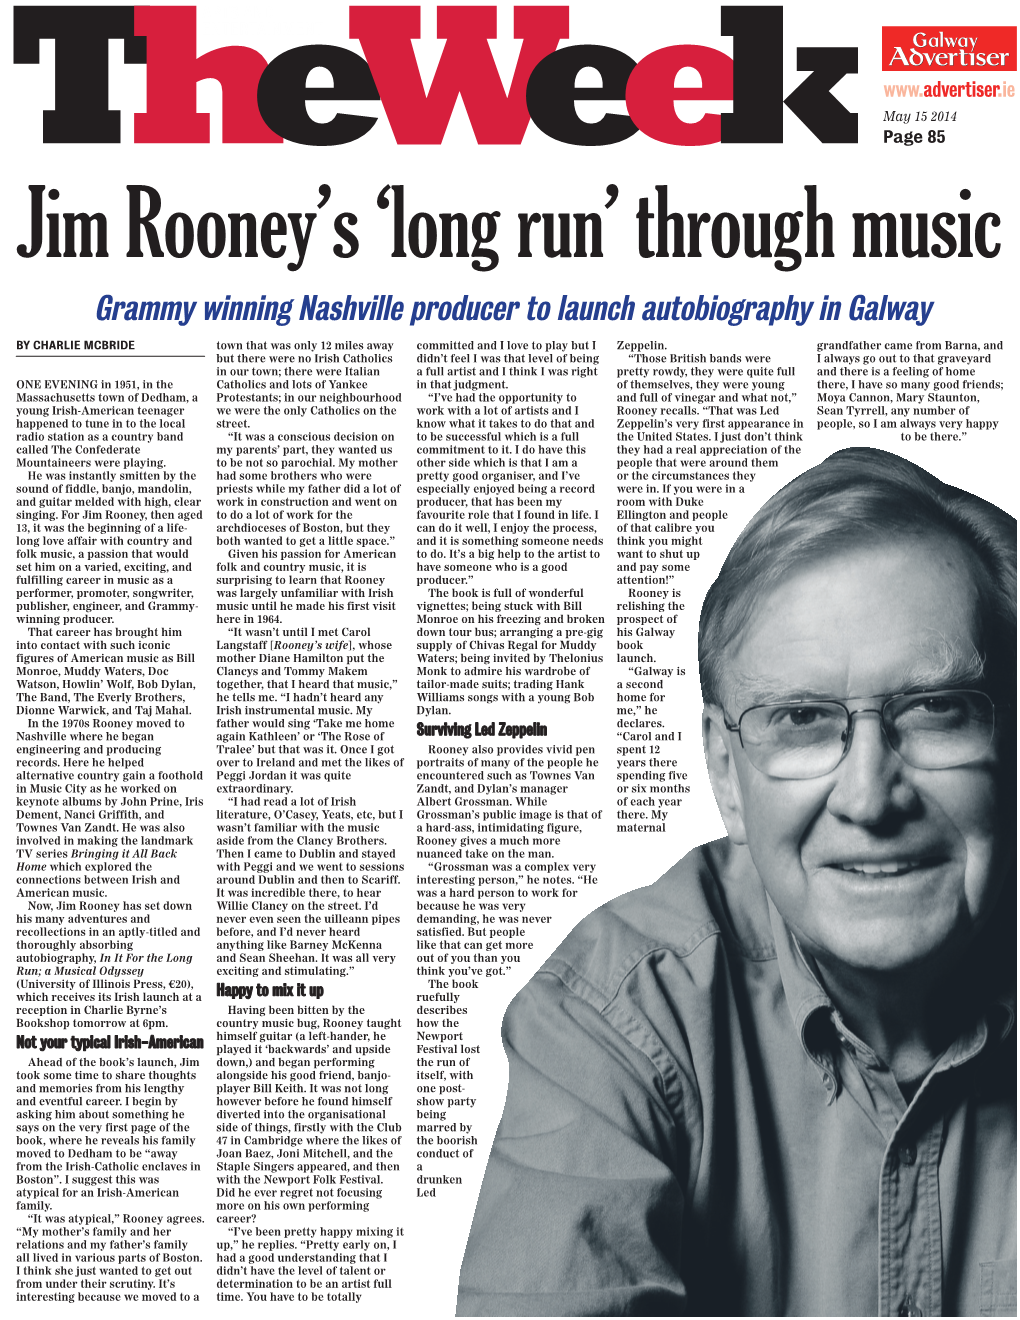 Jim Rooney's 'Long Run'